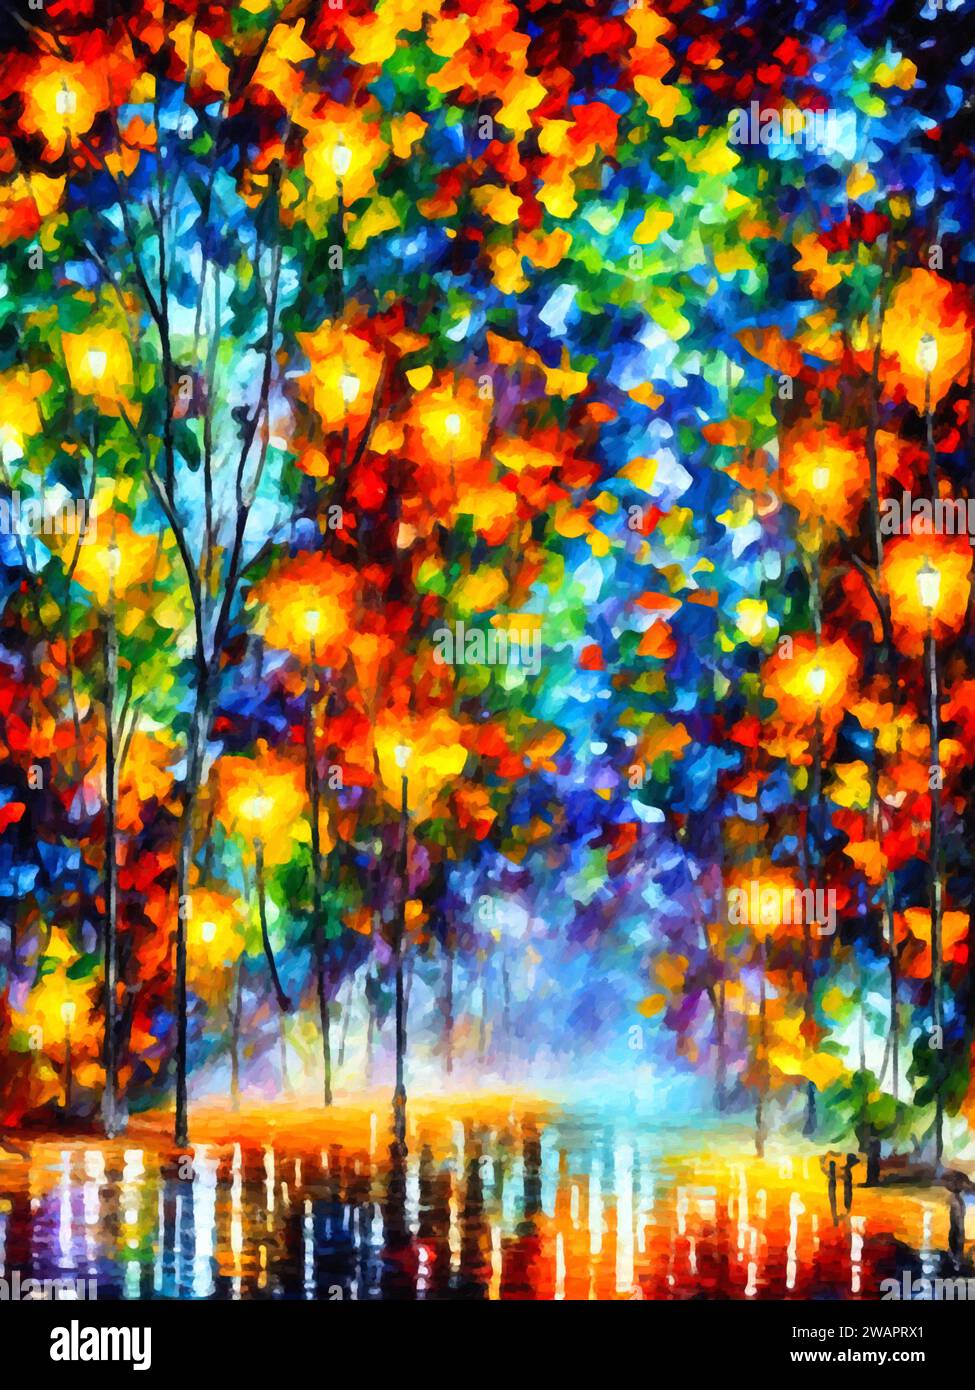 'City Lights' est une peinture impressionniste représentant le dynamisme des paysages urbains dans des couleurs vives. Illustration de Vecteur